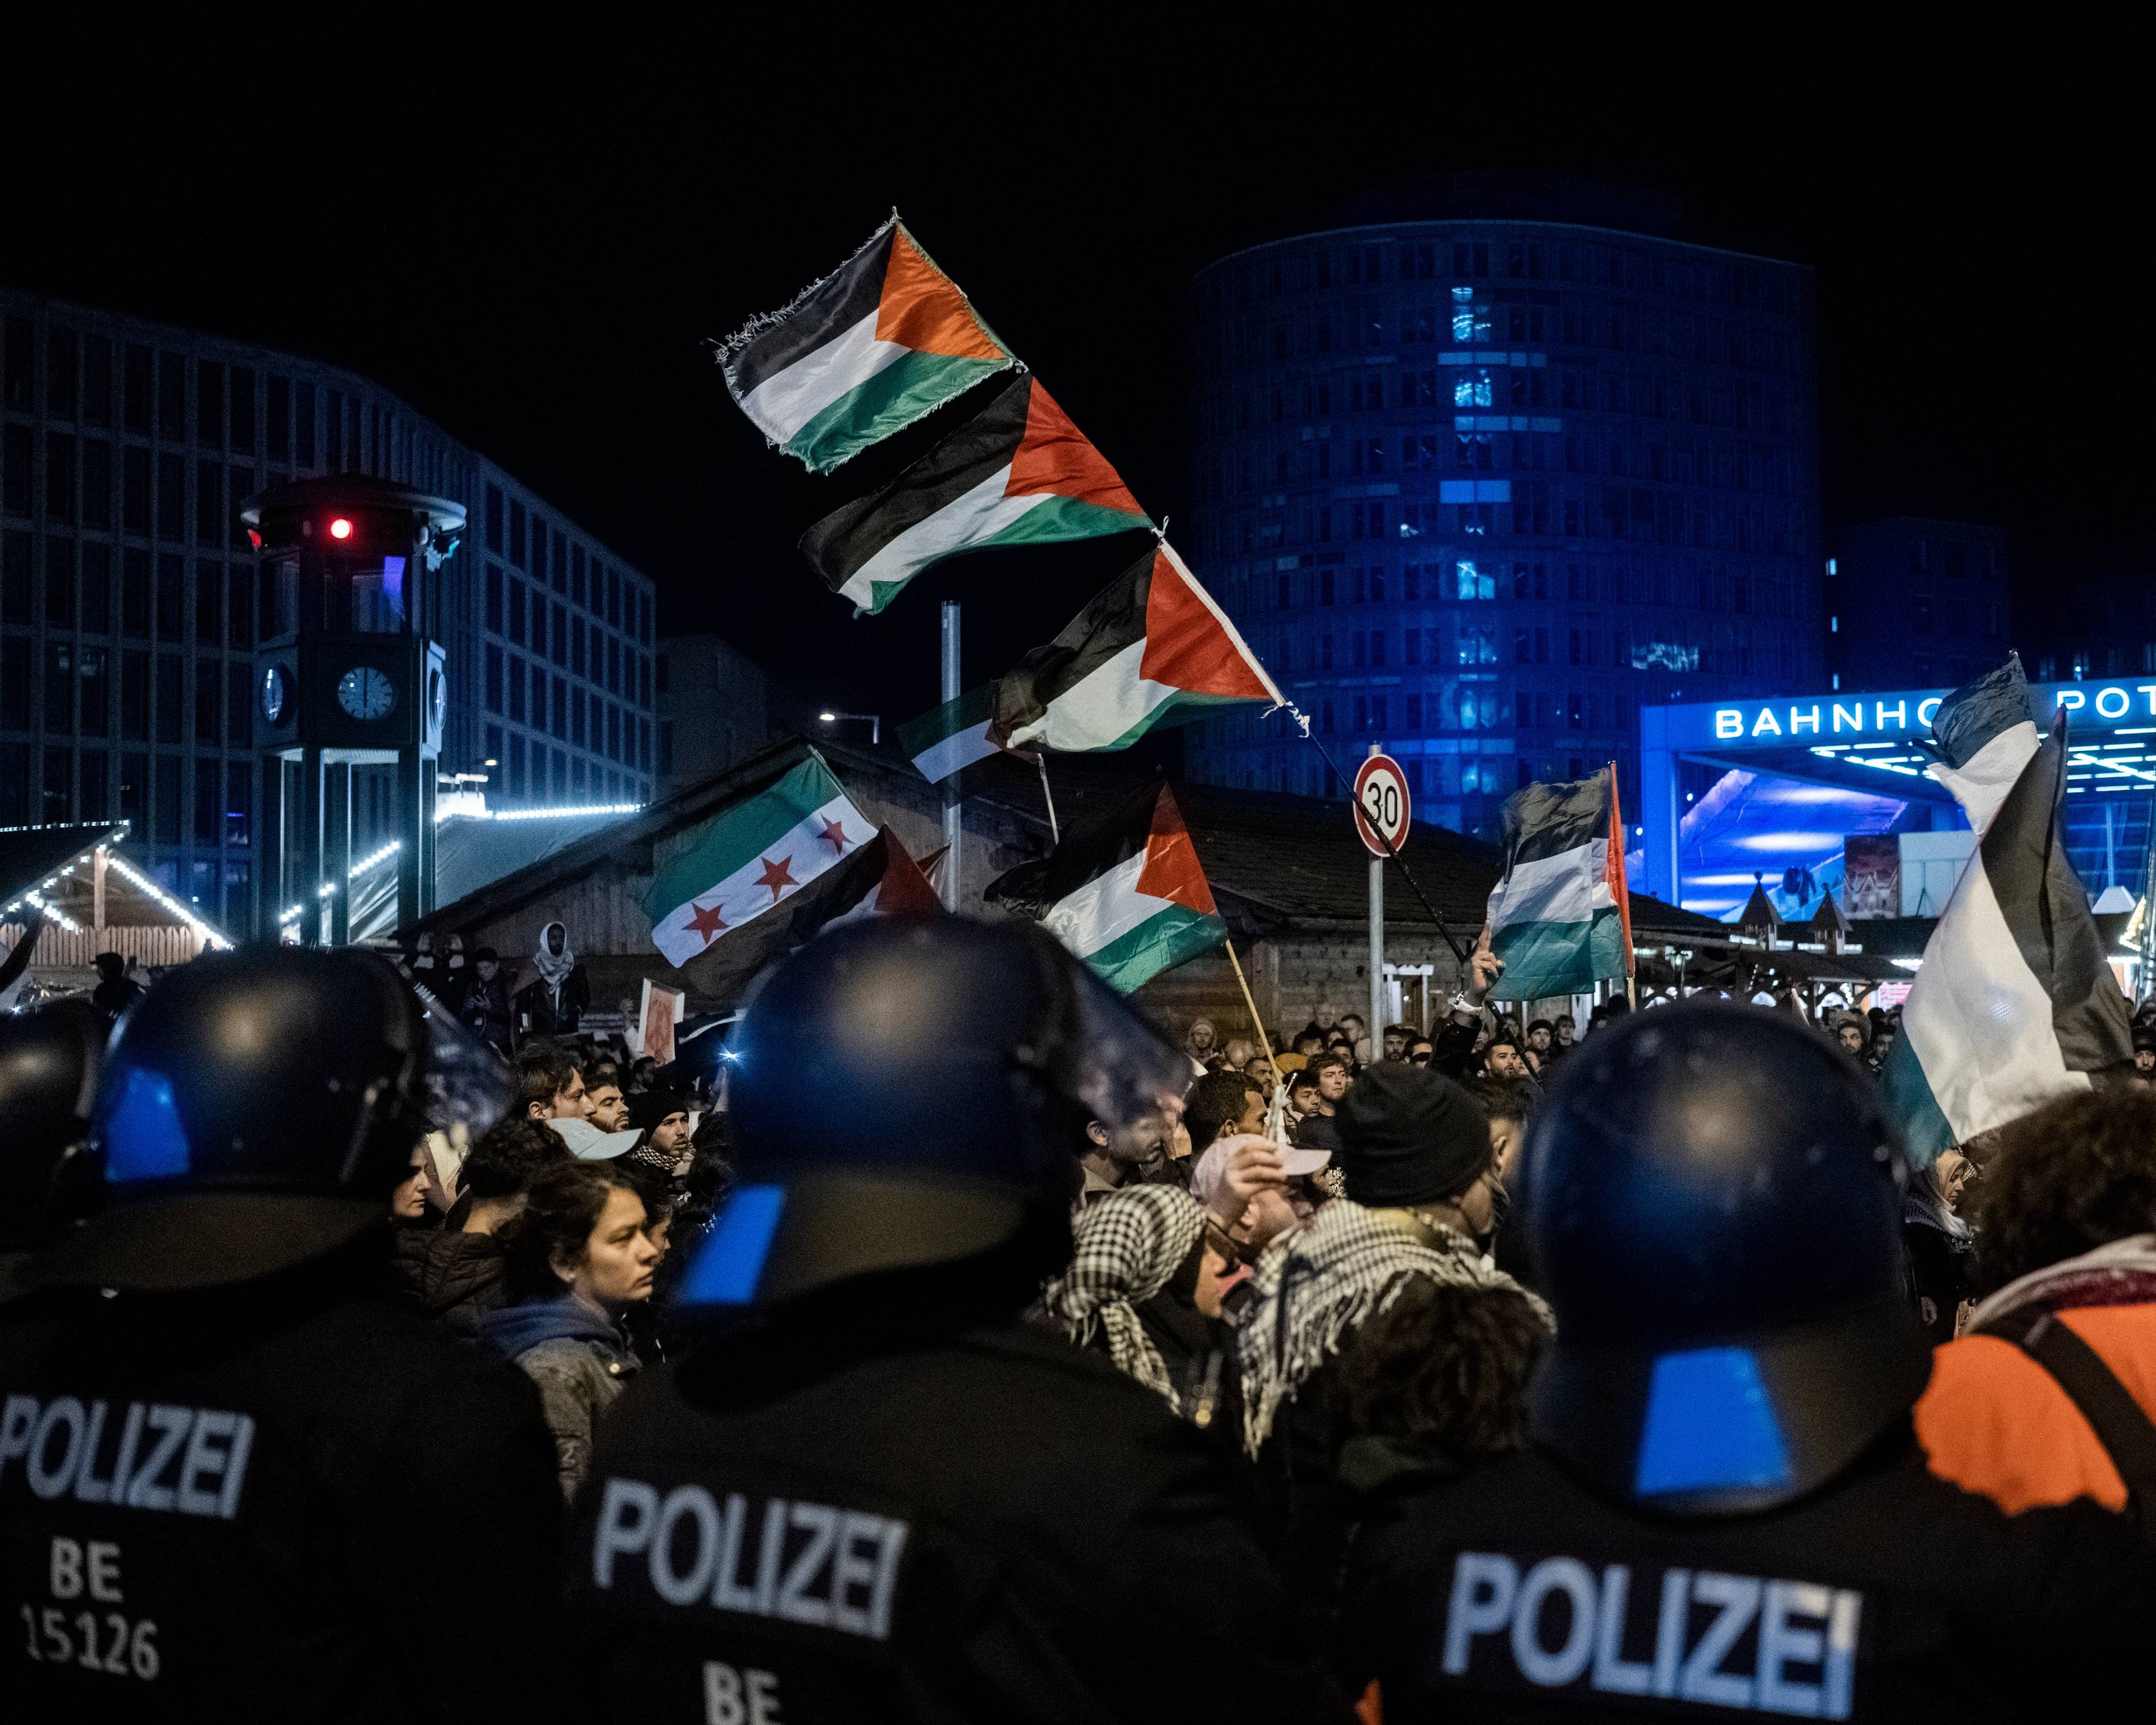 zdjęcie demonstracji wieczorem, na pierwszym planie plecy niemieckich policjantów w kaskach, widać flagi Palestyny i Syrii